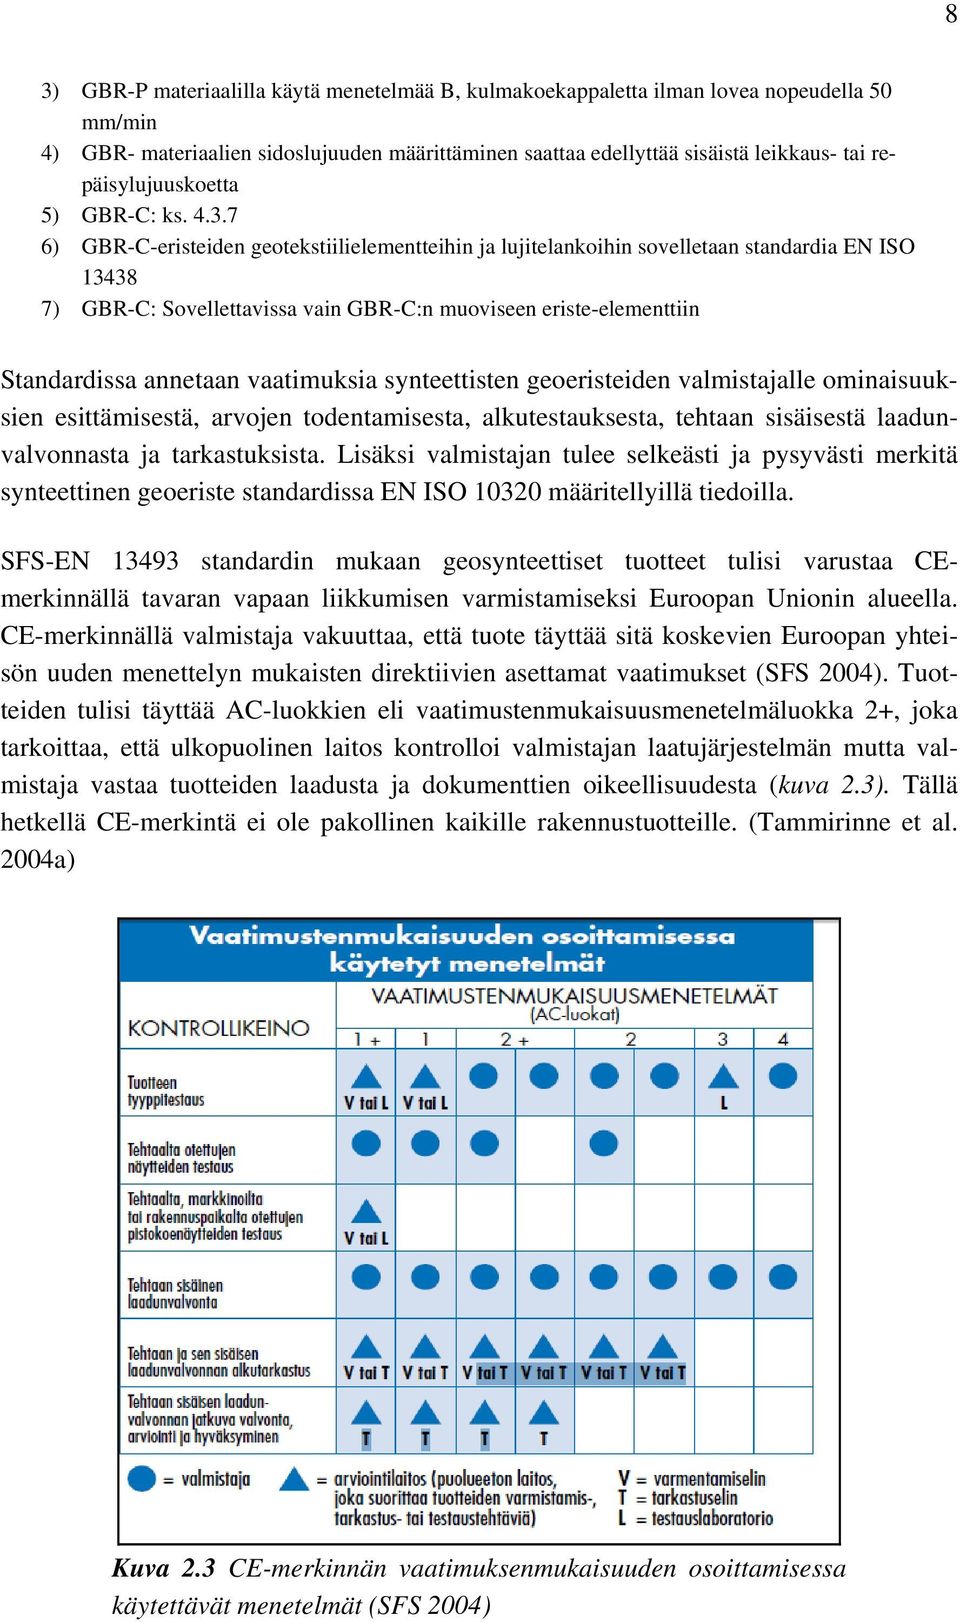 7 6) GBR-C-eristeiden geotekstiilielementteihin ja lujitelankoihin sovelletaan standardia EN ISO 13438 7) GBR-C: Sovellettavissa vain GBR-C:n muoviseen eriste-elementtiin Standardissa annetaan